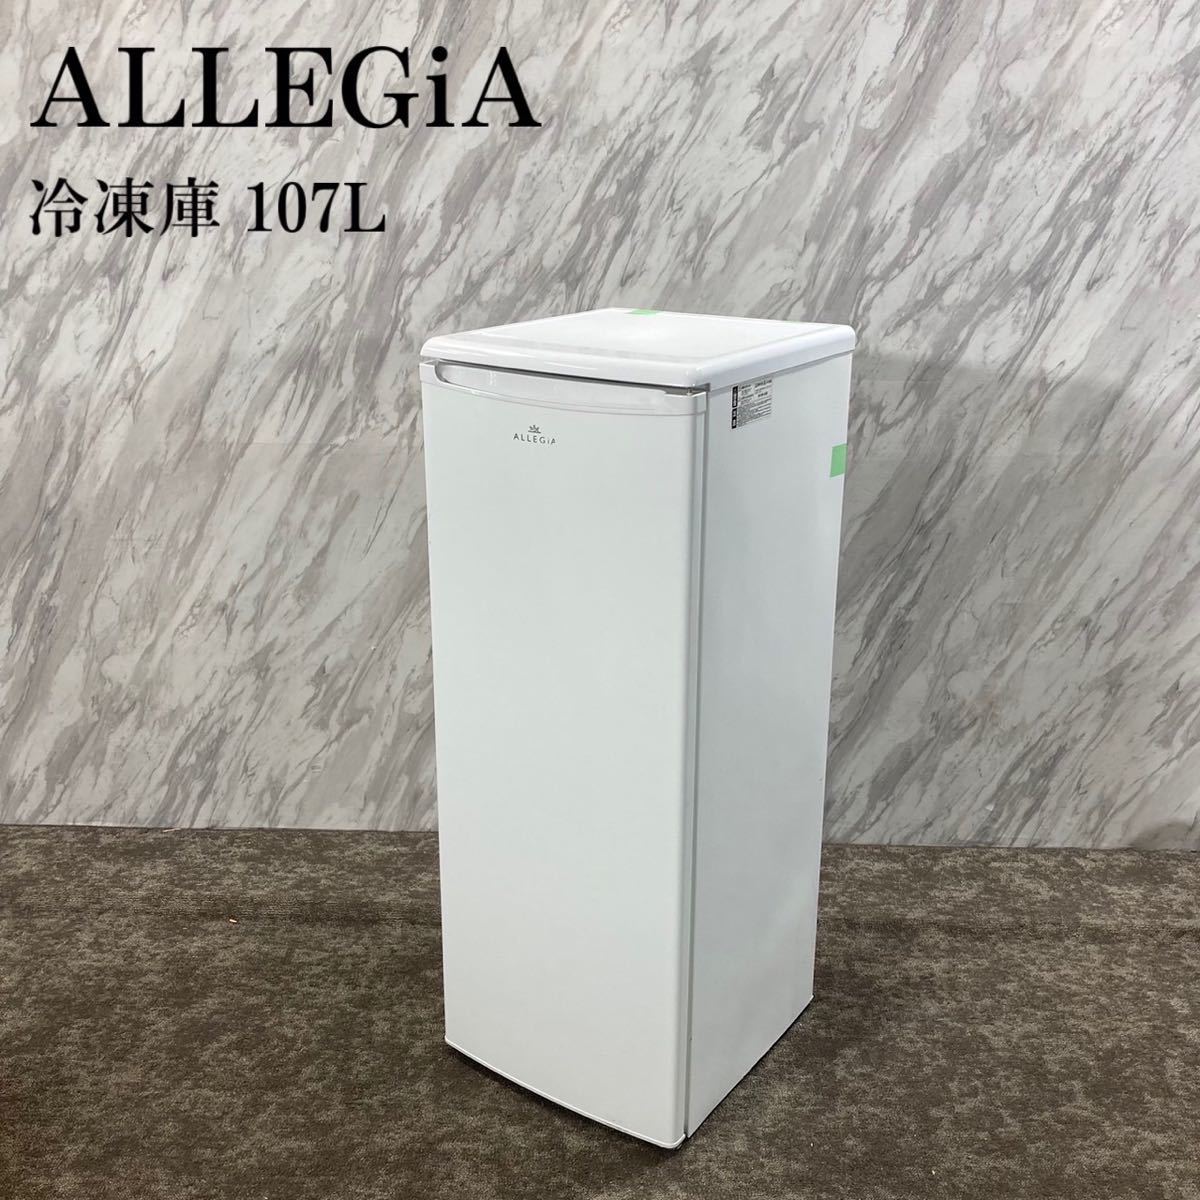 日本未入荷 冷凍庫 ALLEGiA AR-BD120 K571 家電 2021年製 107L 冷凍庫